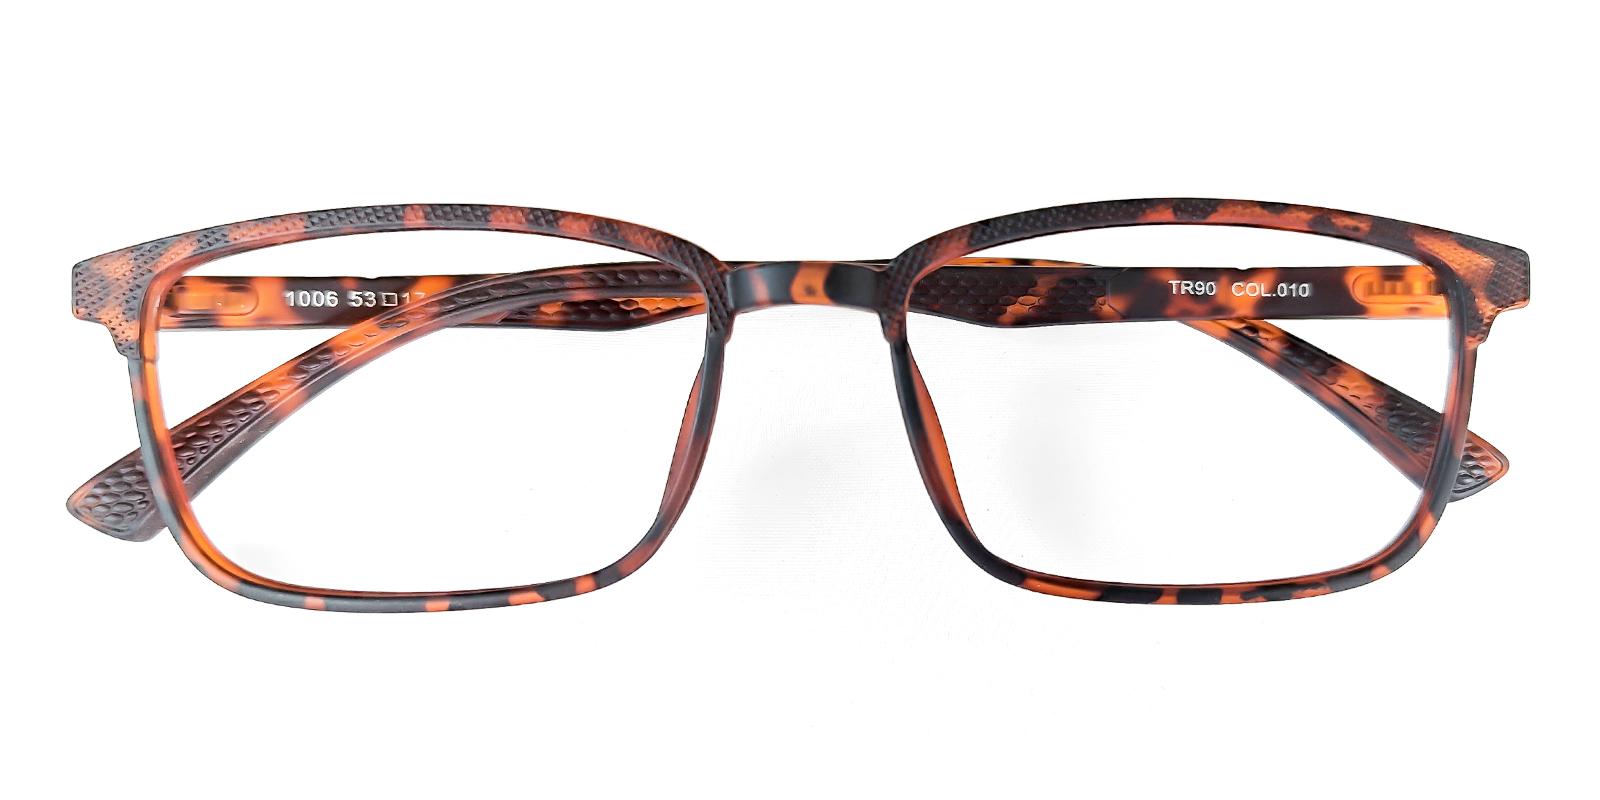 Mercair Tortoise TR Eyeglasses , UniversalBridgeFit , Lightweight Frames from ABBE Glasses